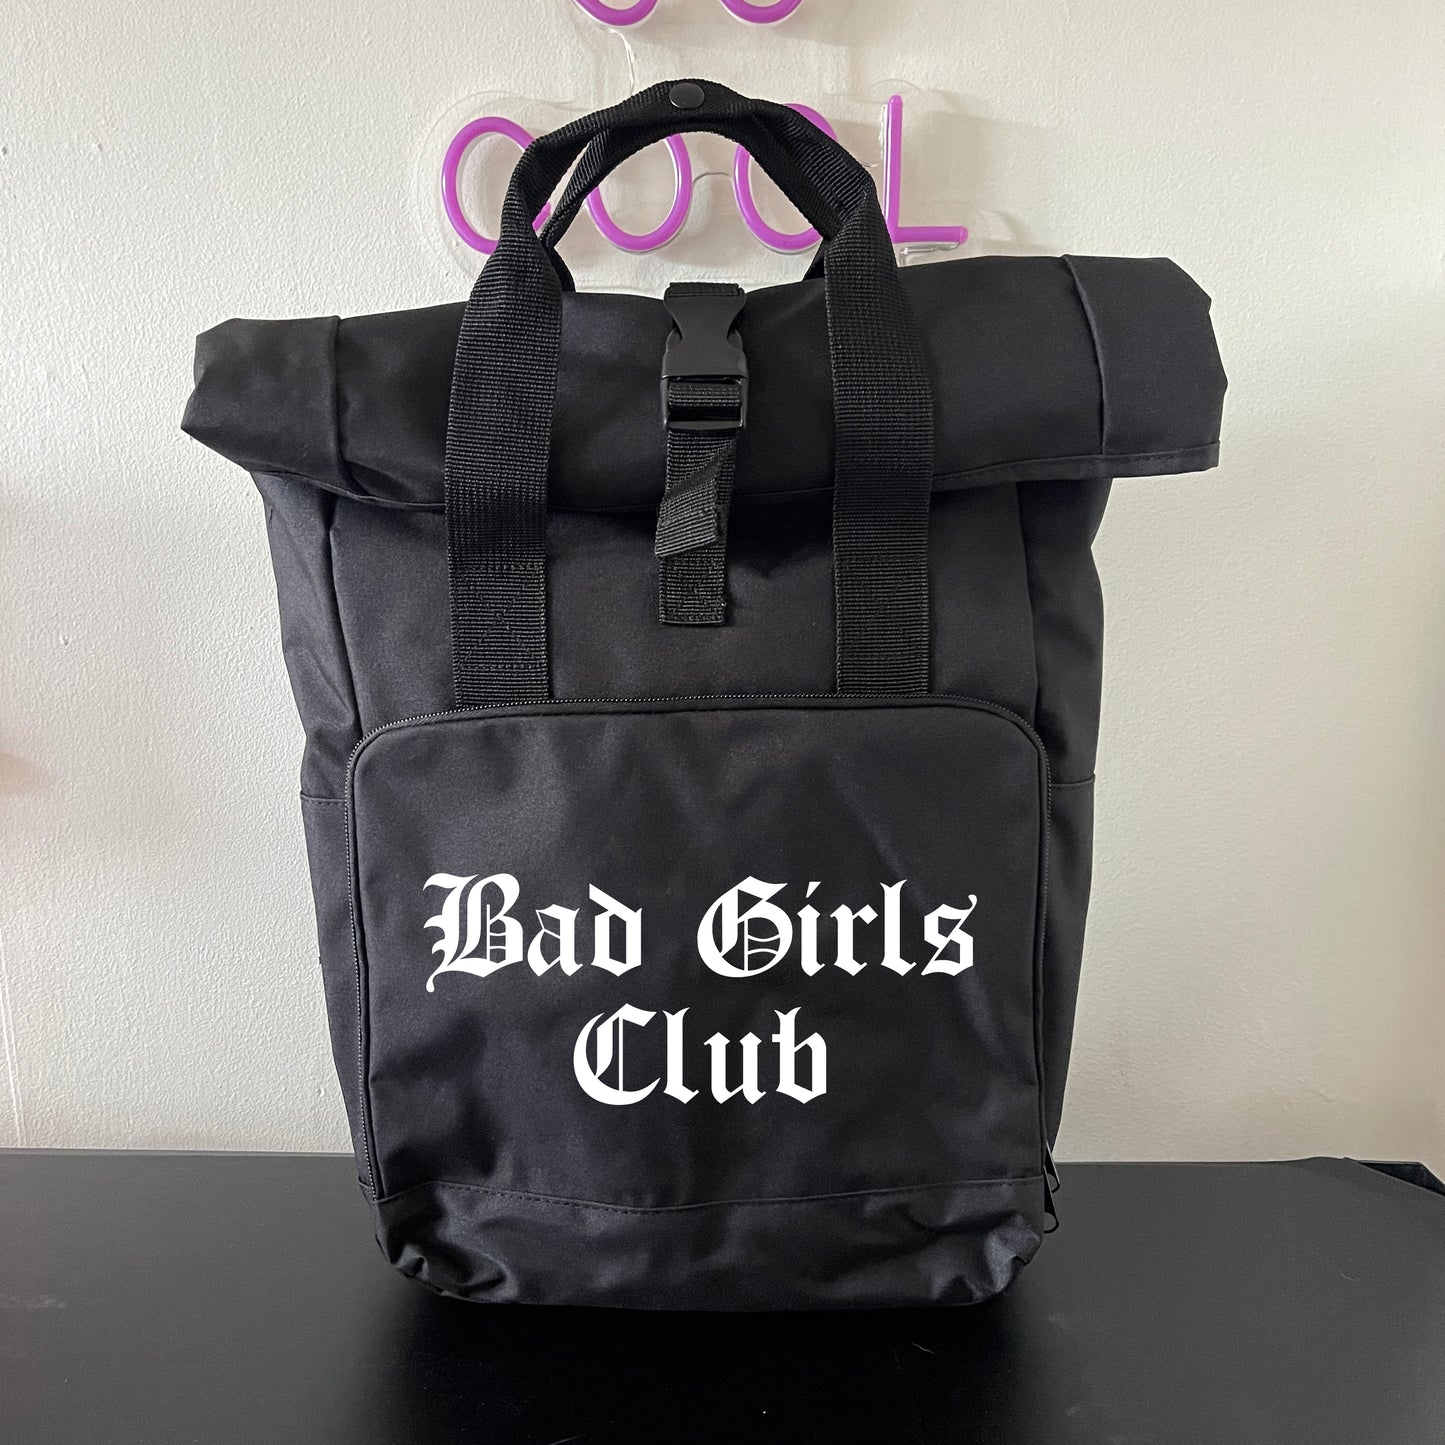 BAD GIRLS CLUB BACKPACK